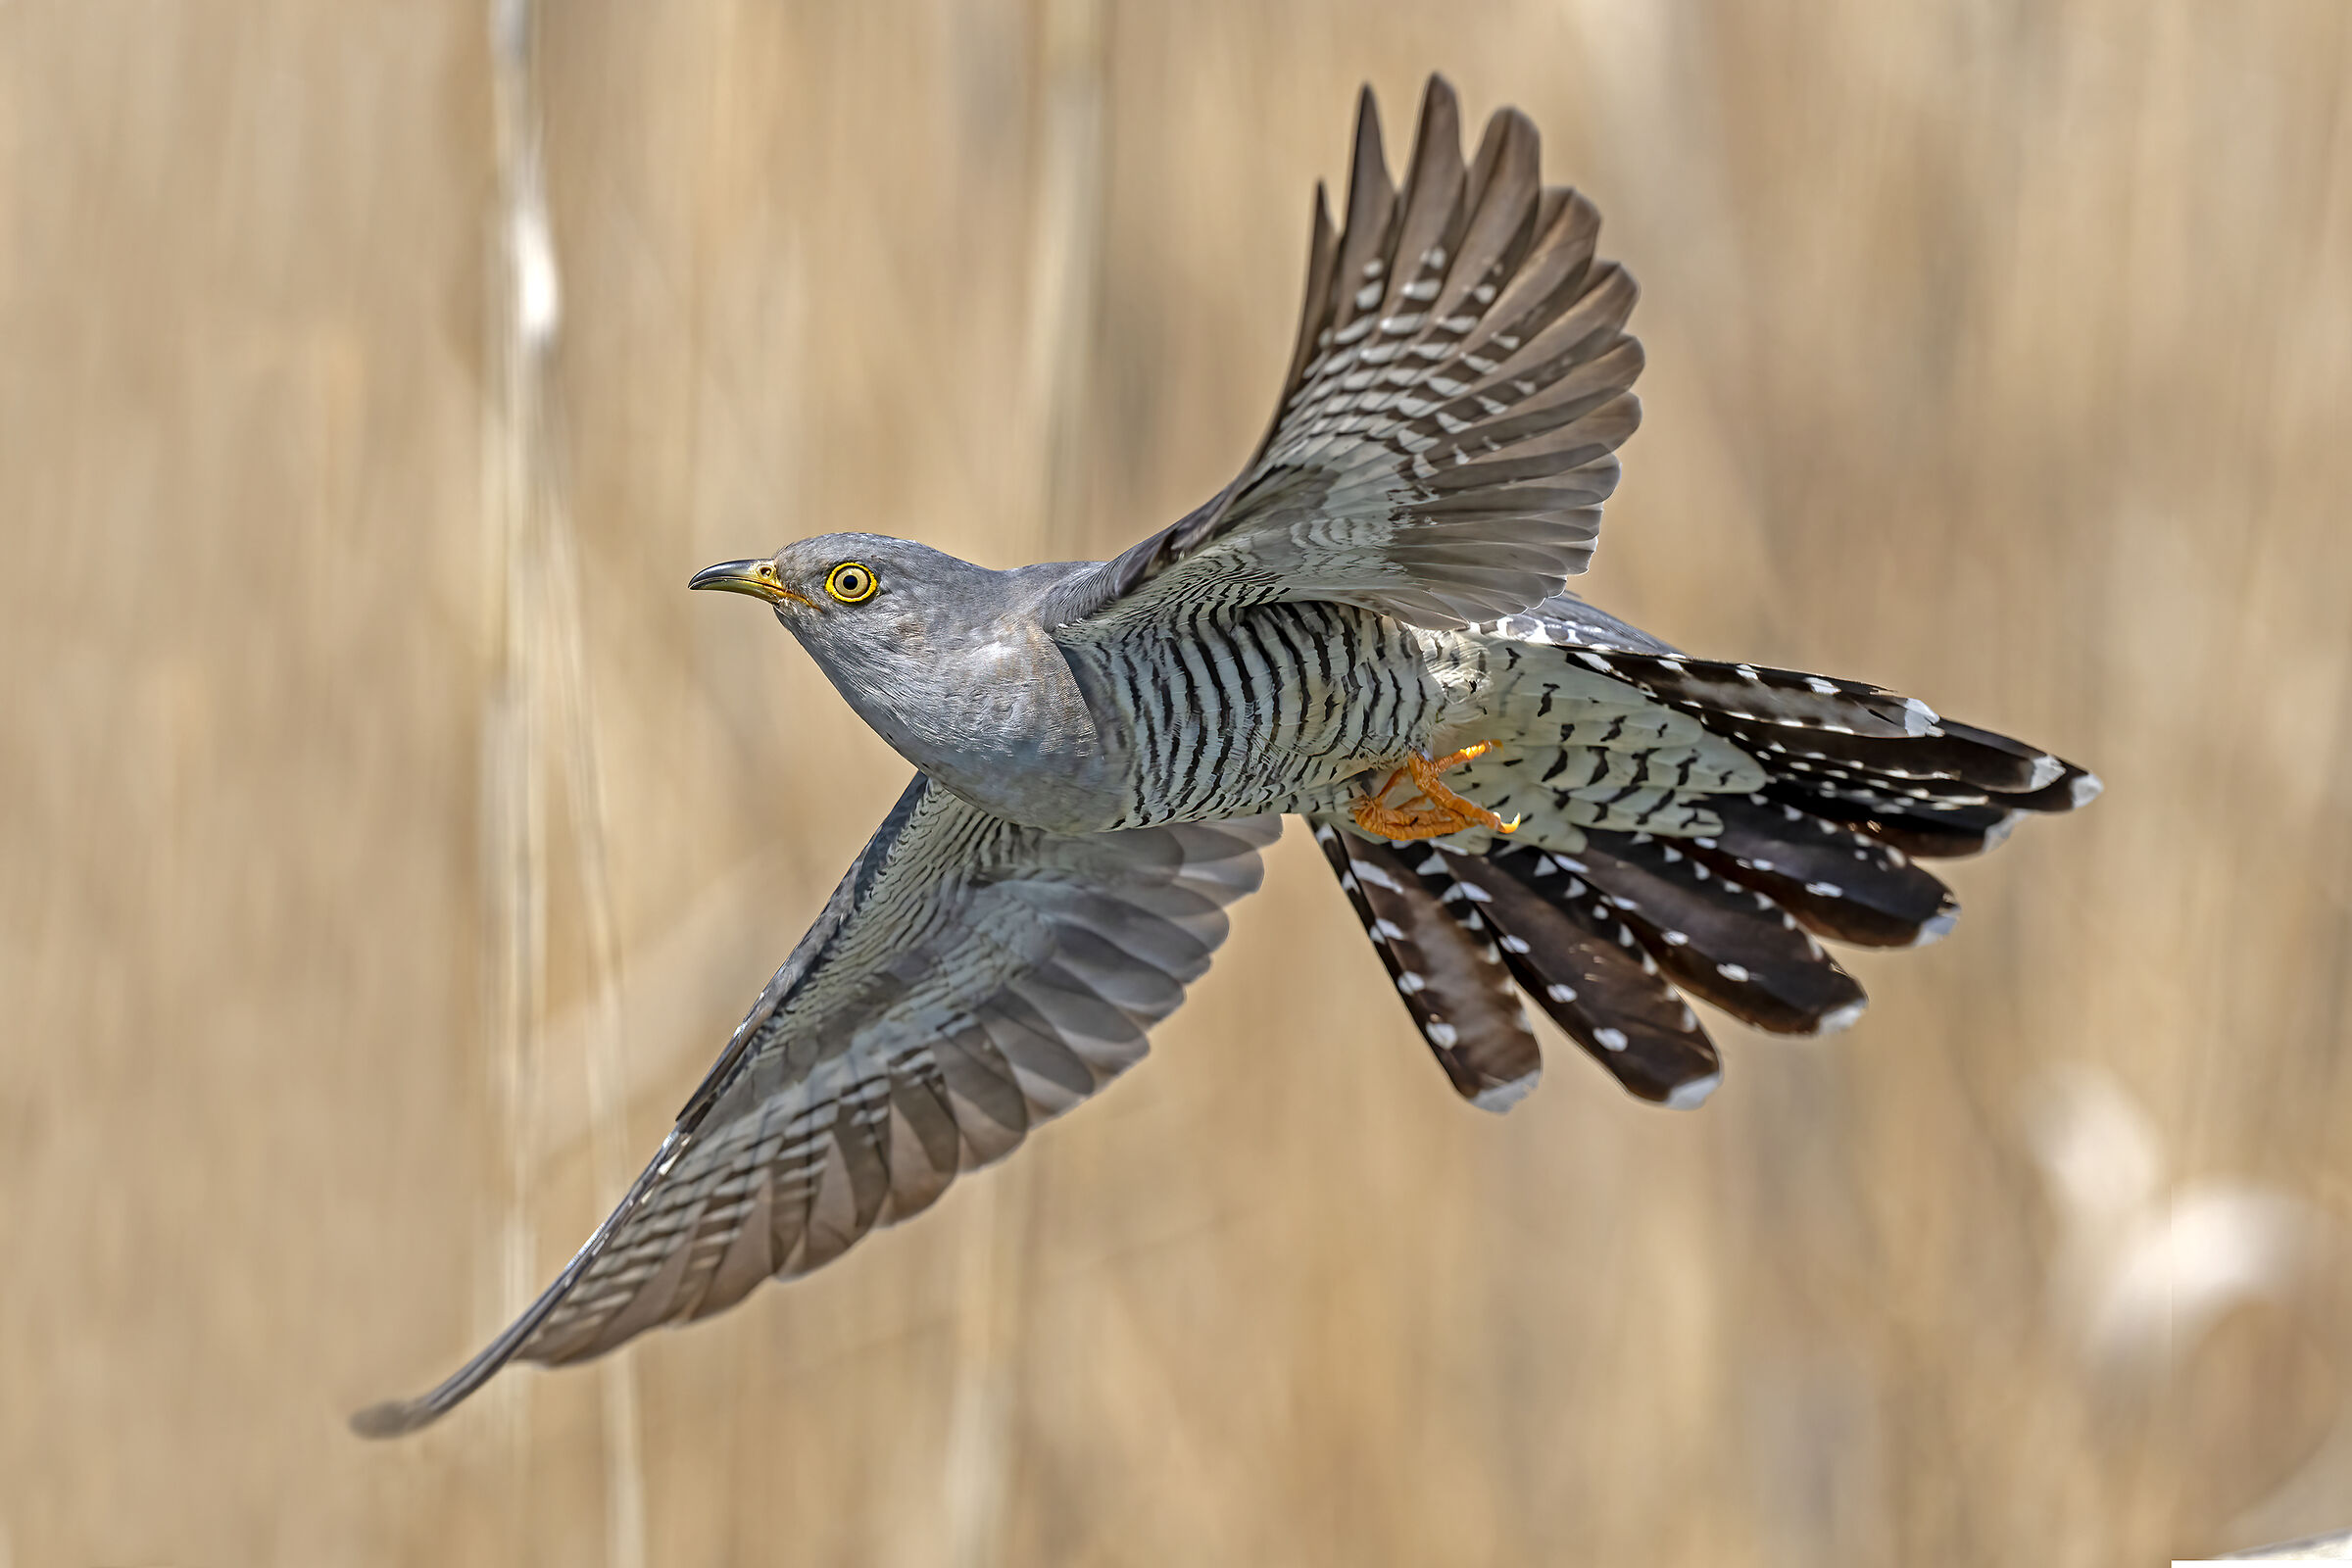 Cuckoo in flight...